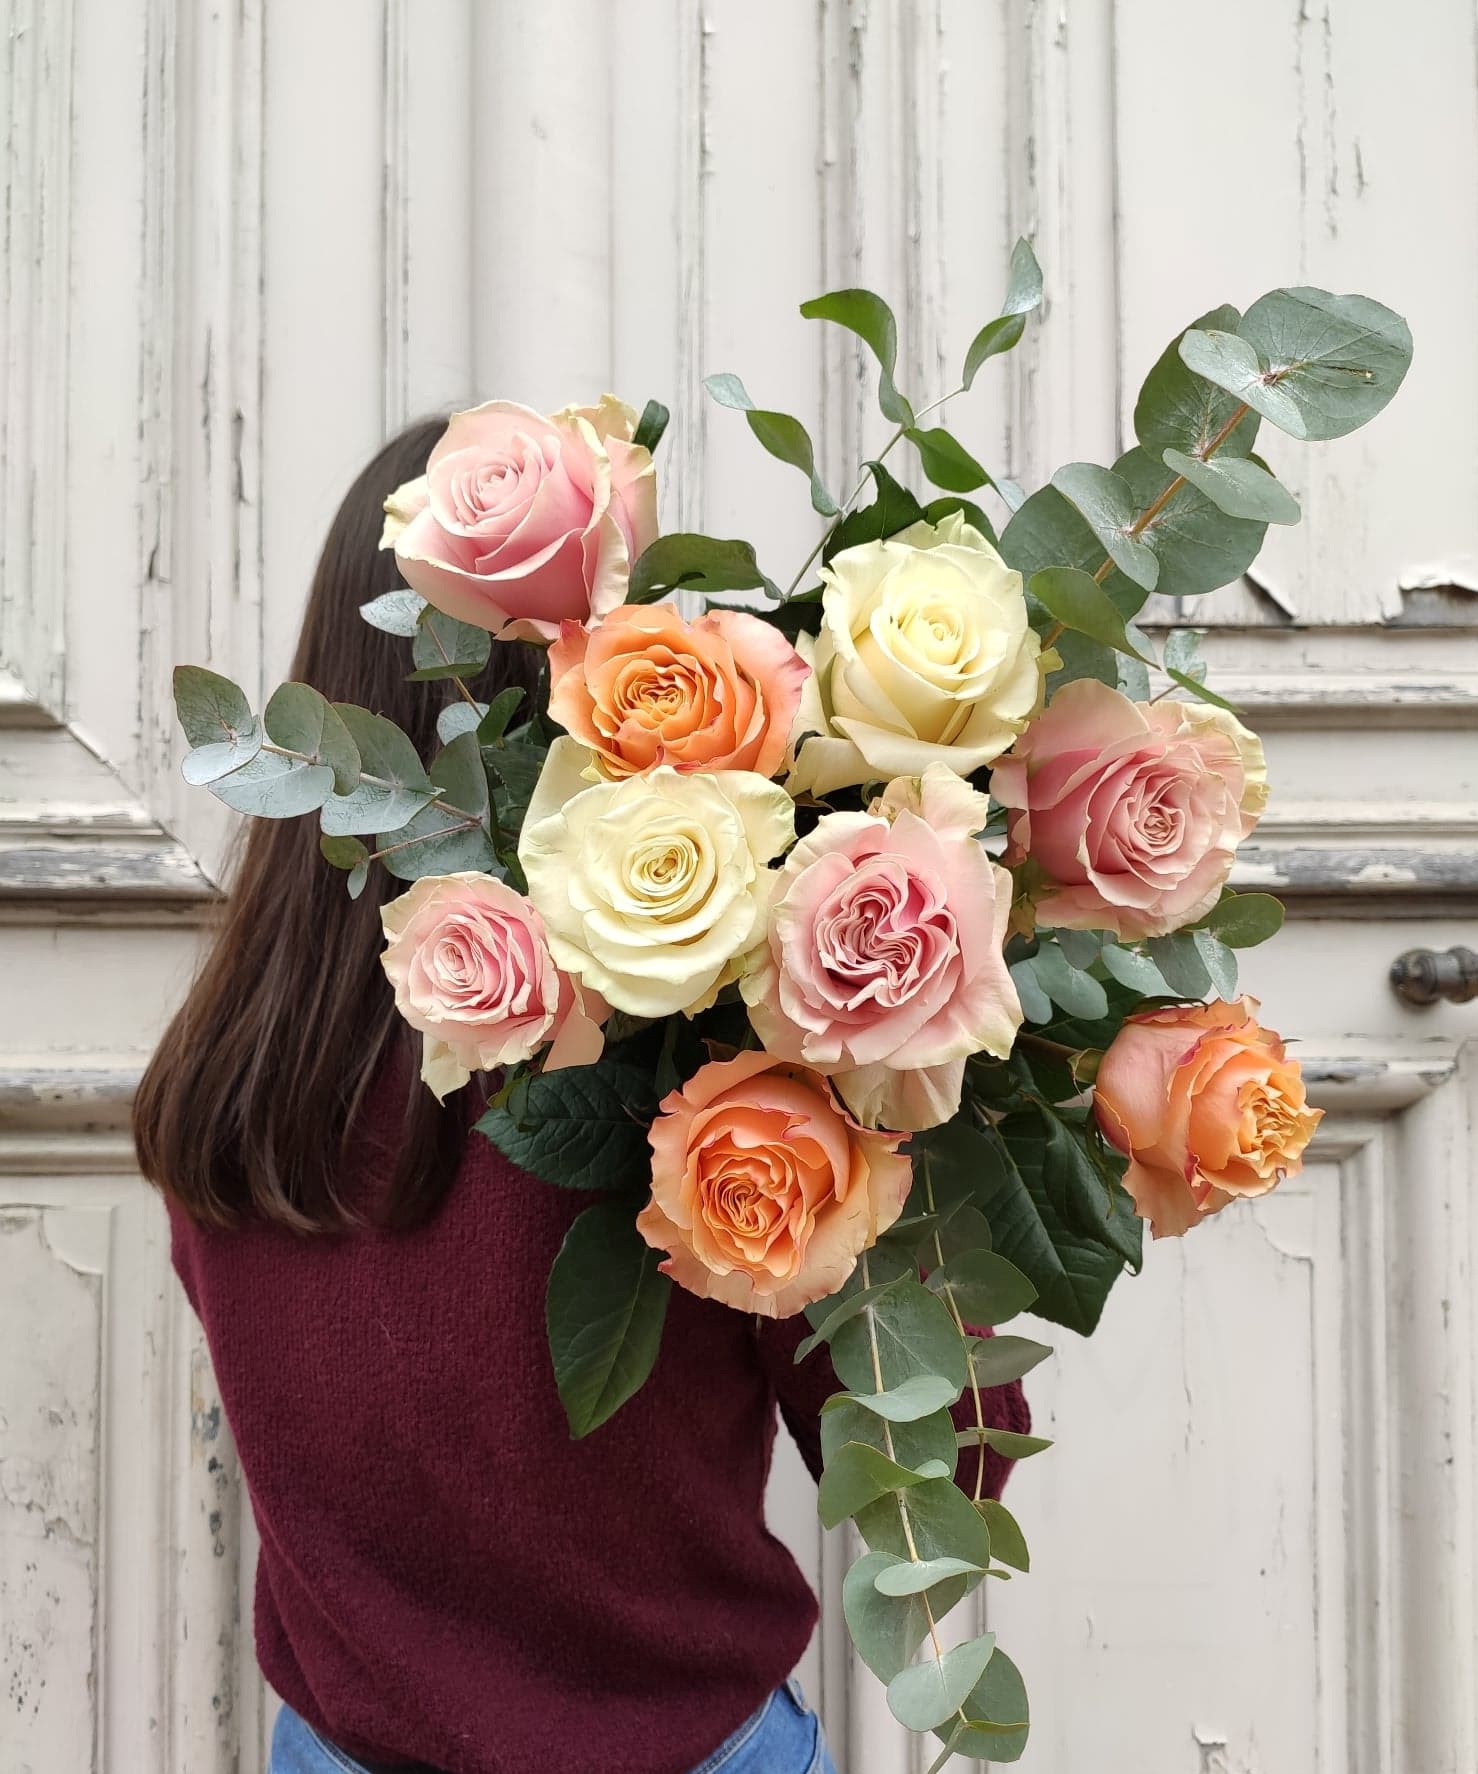 Bouquet de Roses équateur commerce équitable